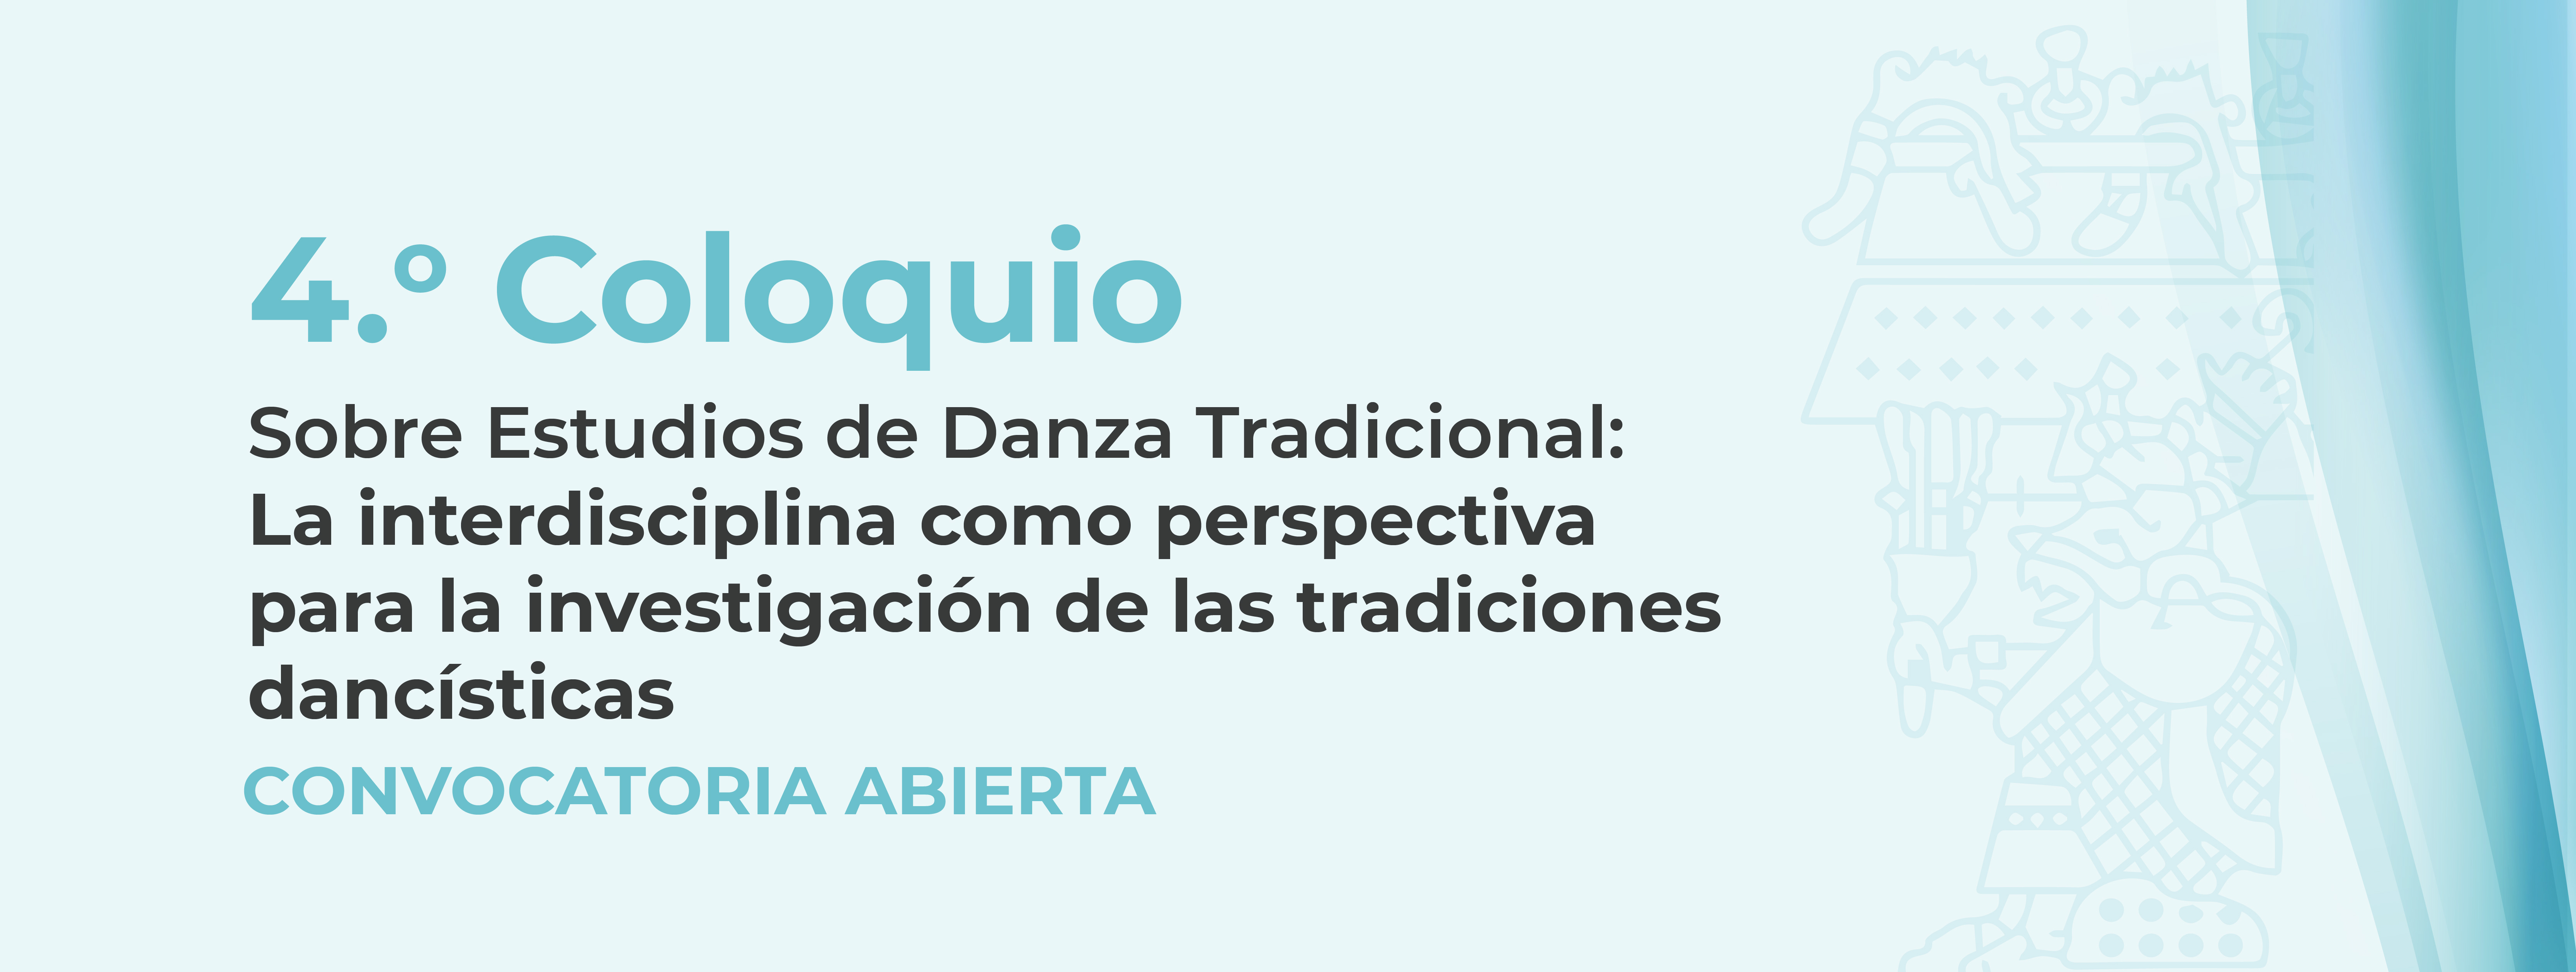 Coloquio sobre Estudios de Danza Tradicional: La interdisciplina como perspectiva para la investigación de las tradiciones dancísticas